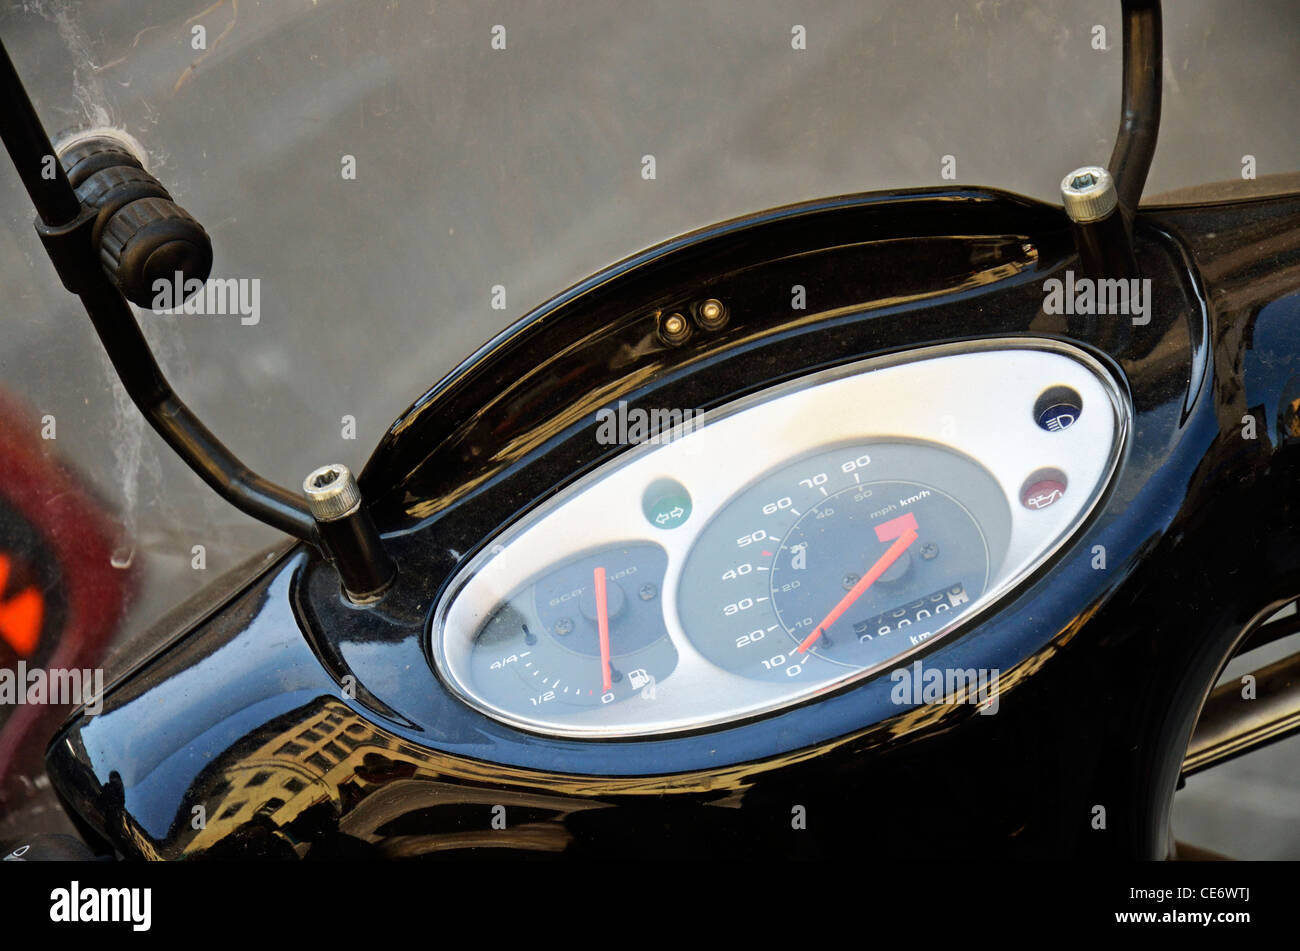 Pfund-Zeichen auf einem Auto Kraftstoff Manometer zeigt leer  Stockfotografie - Alamy